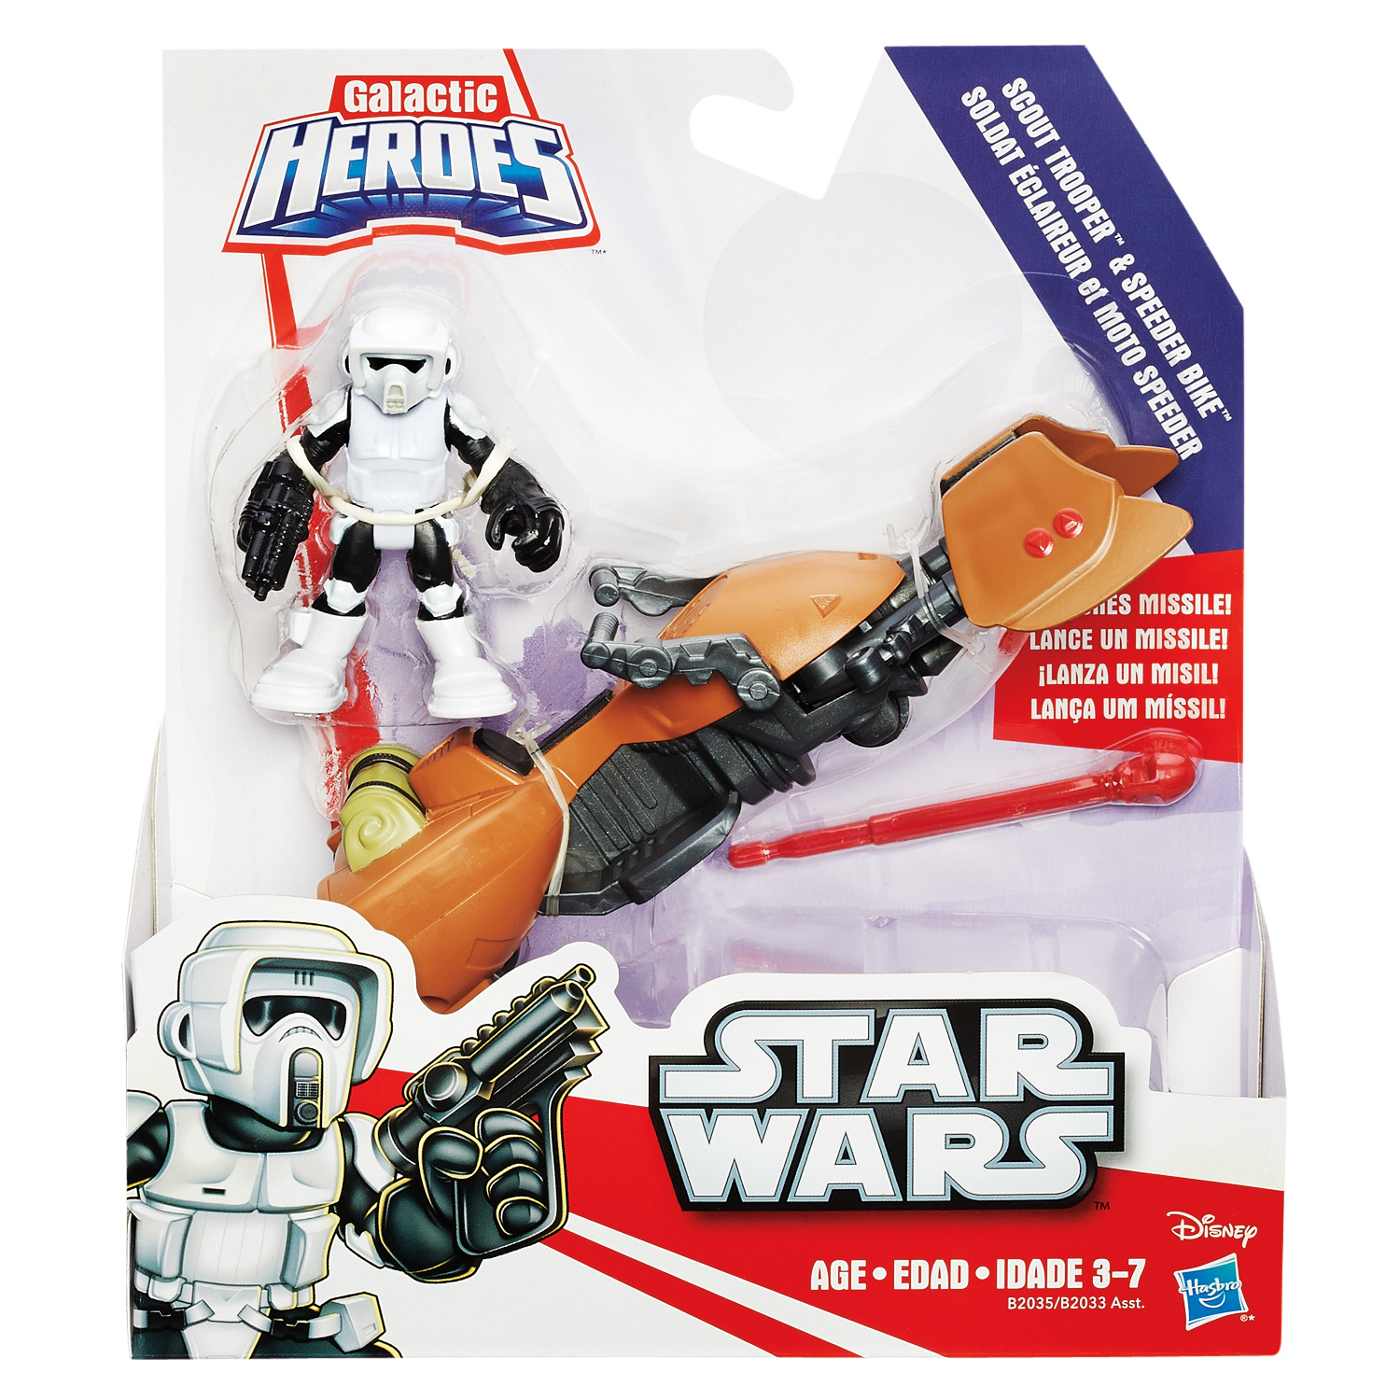 Playskool Heroes Star Wars Galactic Heroes Deluxe Figure Pack Assortment; image 2 of 2